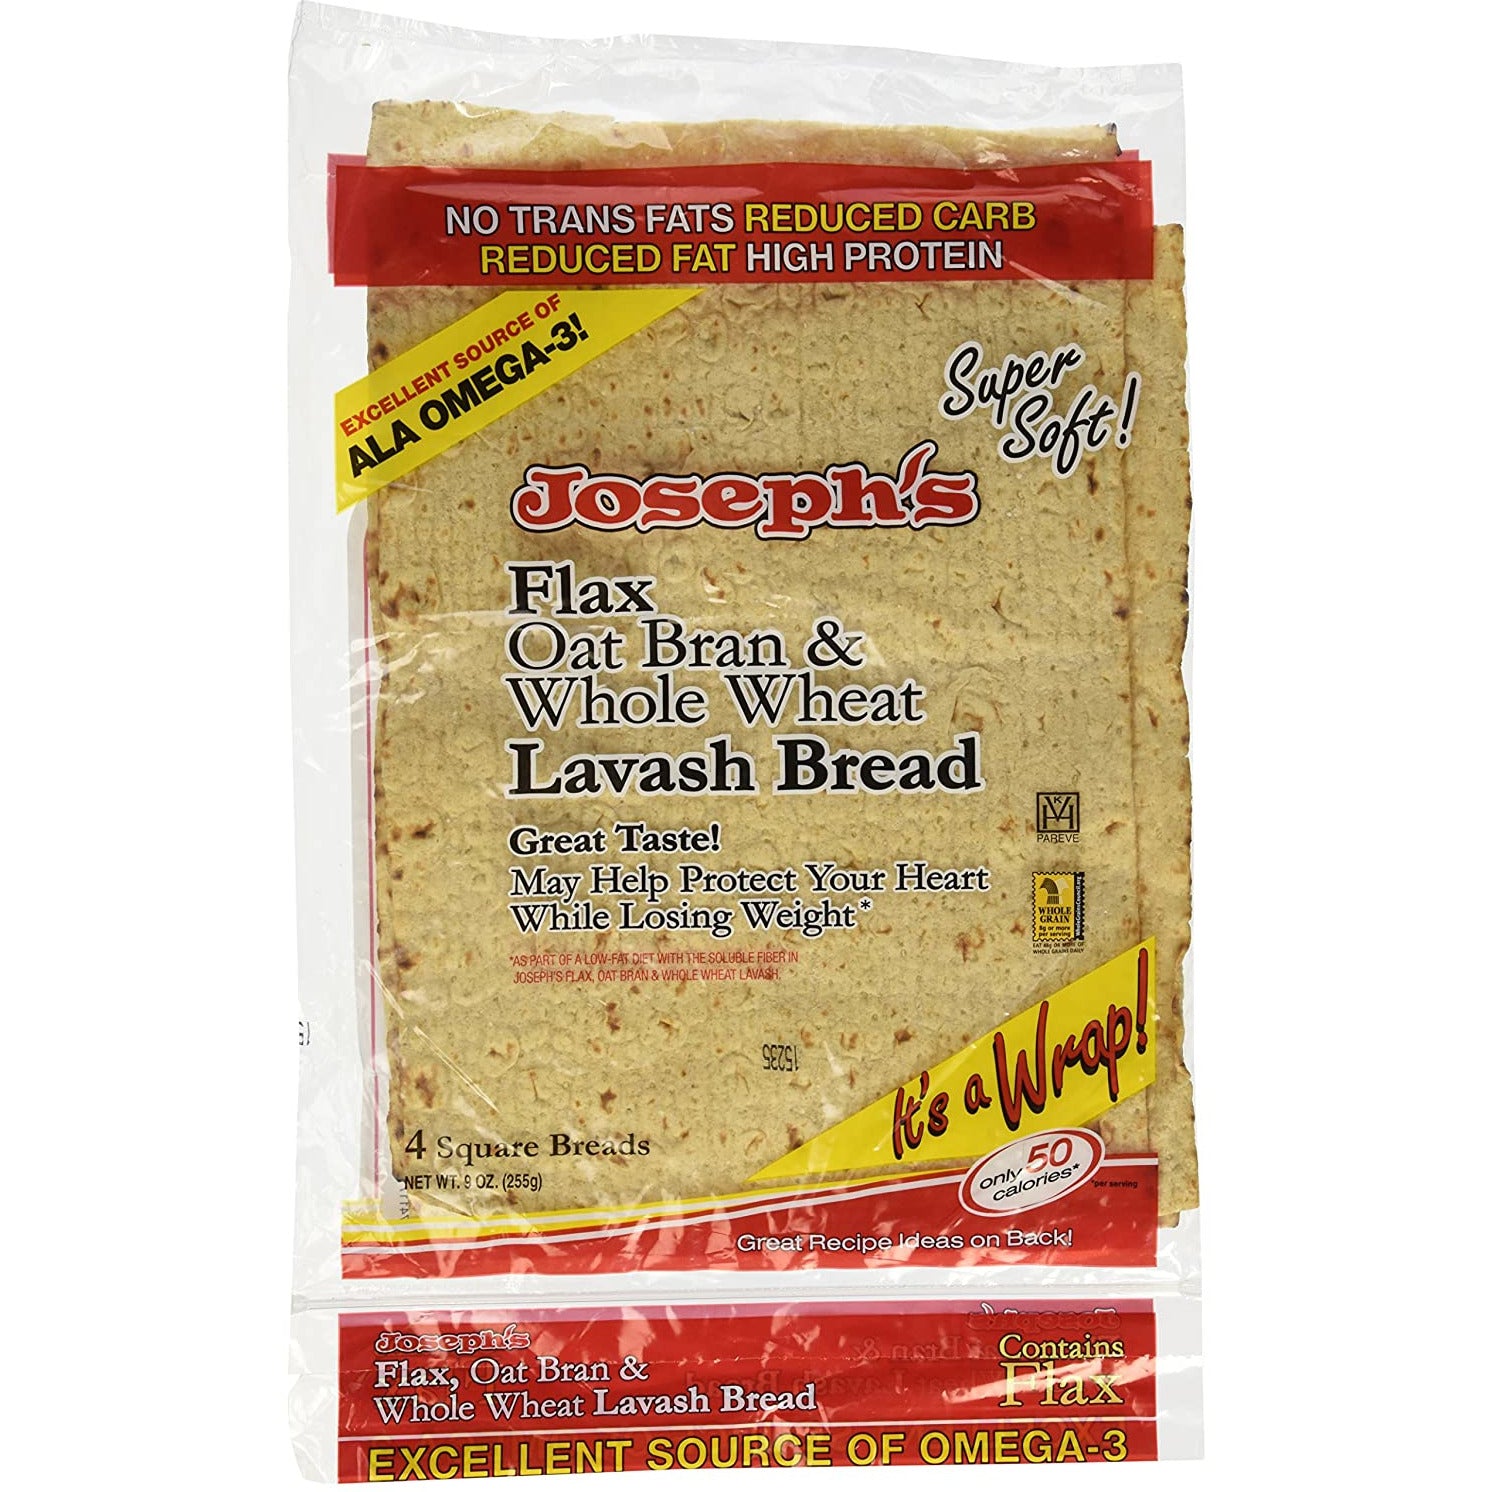 Joseph's Flax, Oat Bran &amp; Whole Wheat Lavash Bread, 8 ct.